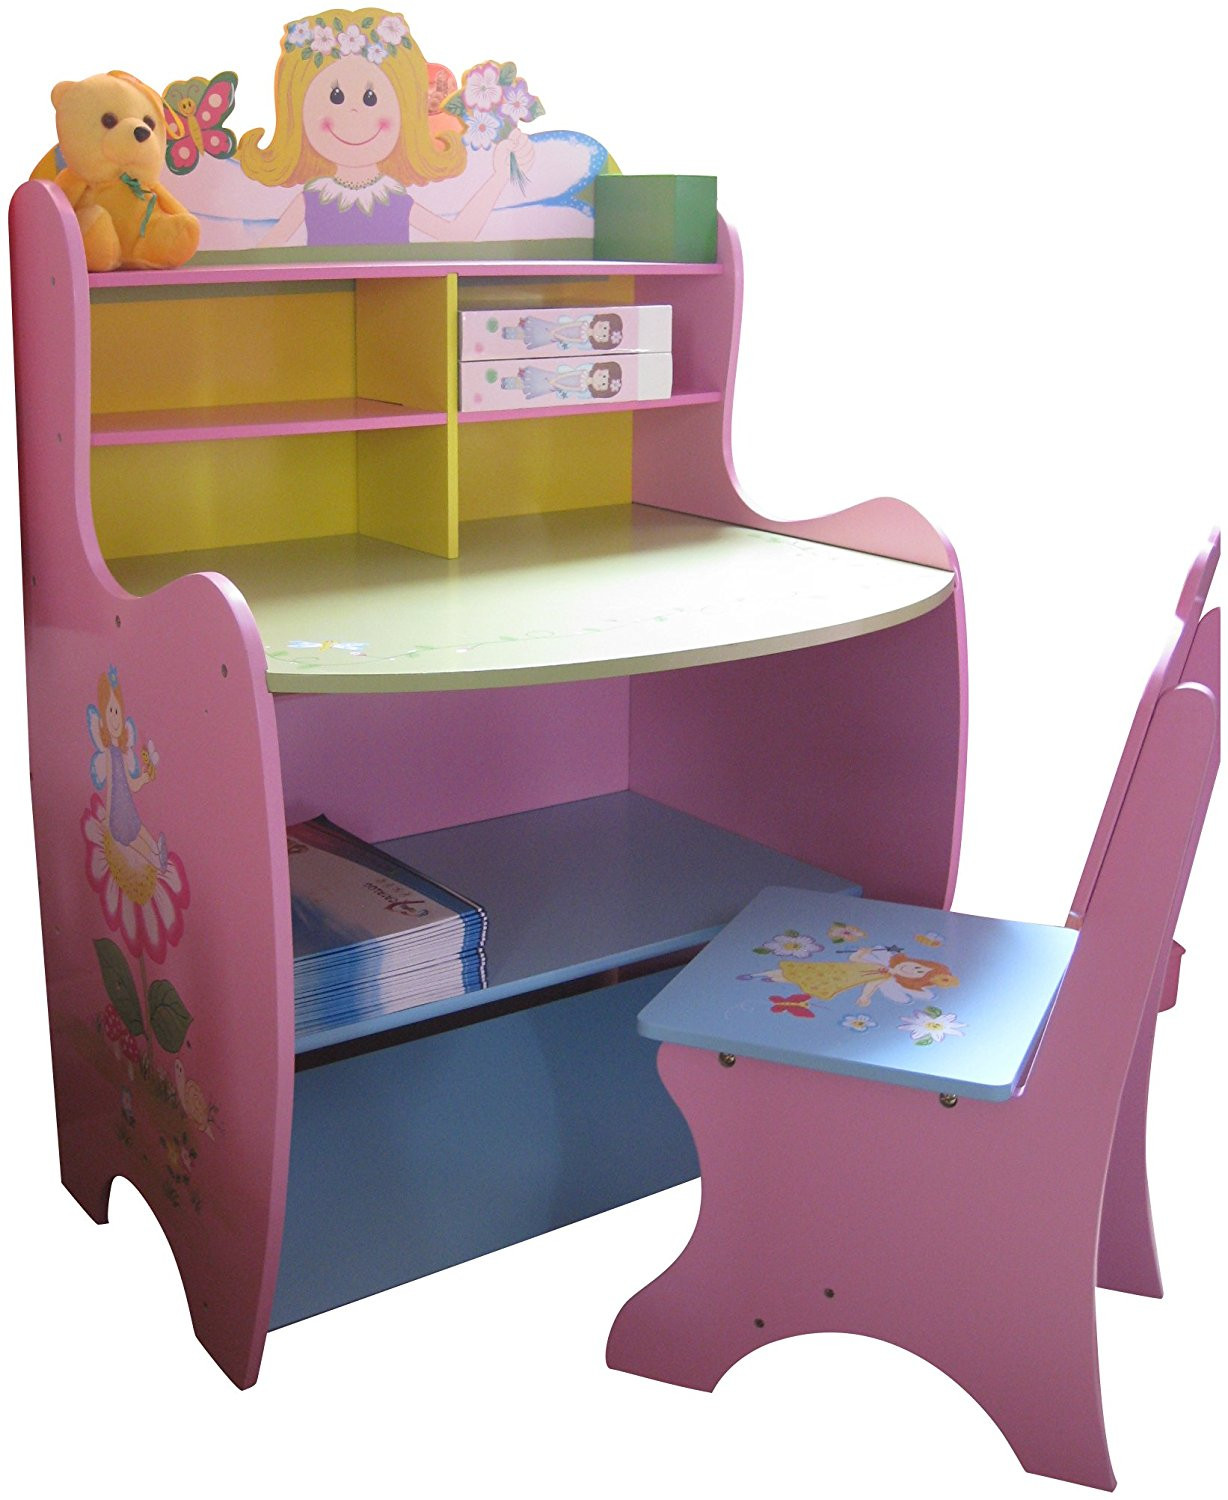 Childrens Storage Furniture
 Childrens Desk Chair Wooden Writing Storage Fairy Bedroom